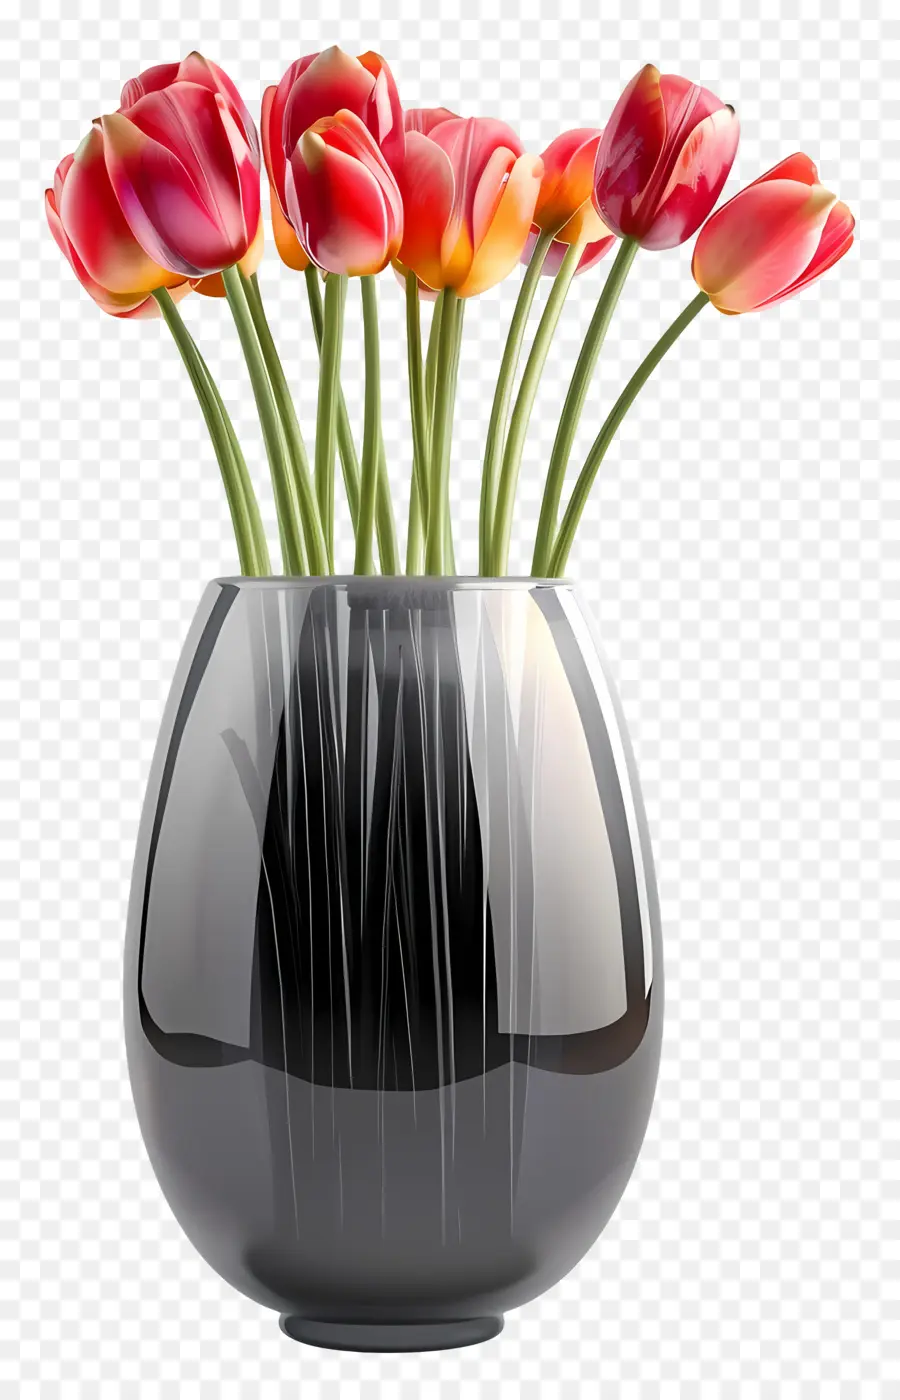 Gesteck - Schwarze Vase mit roten Tulpen, grüne Stängel